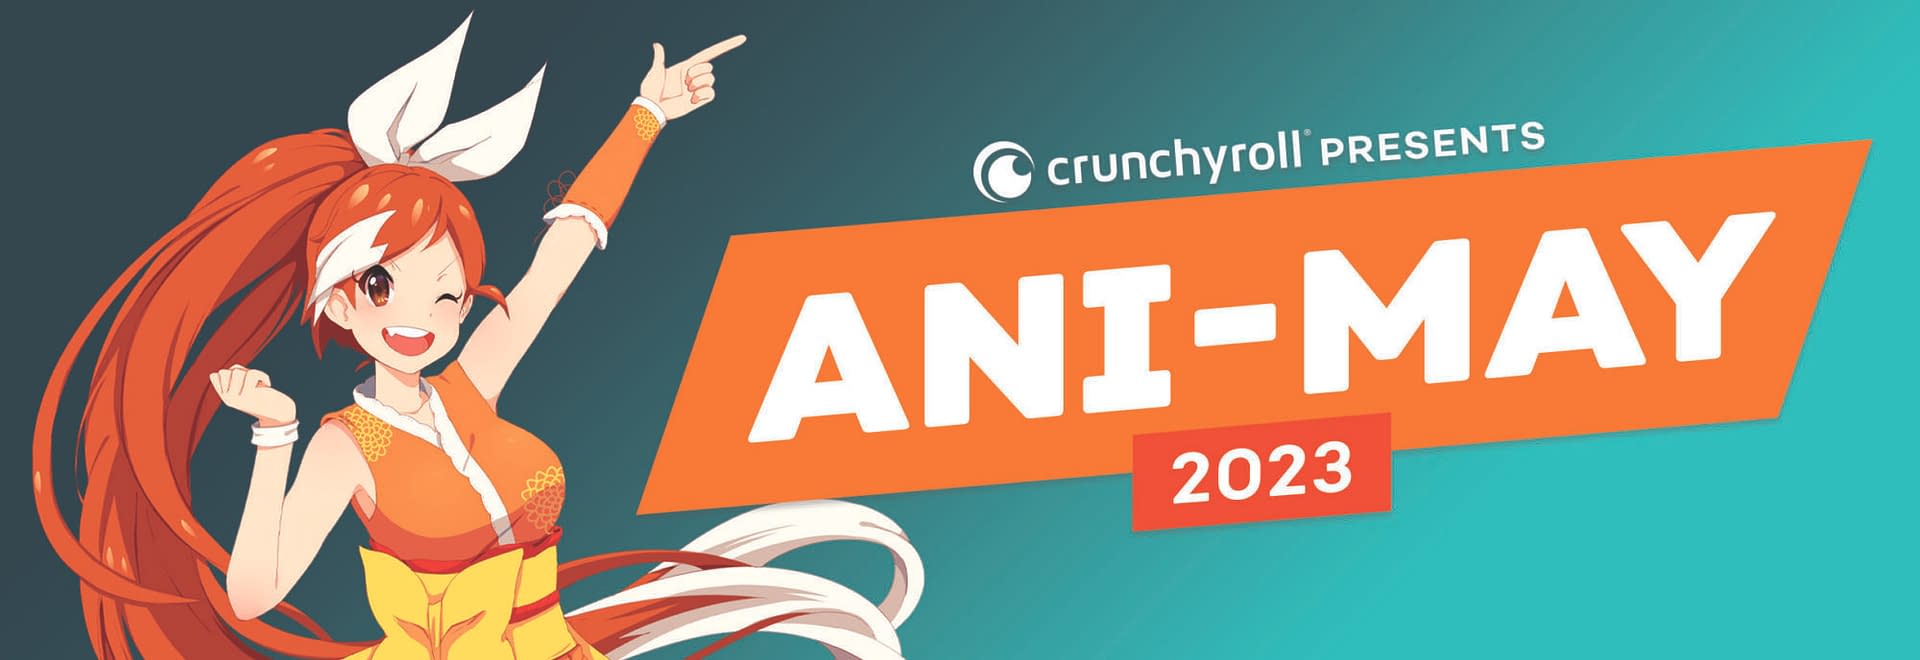 Crunchyroll announces addition of popular Anime â€œBLEACHâ€